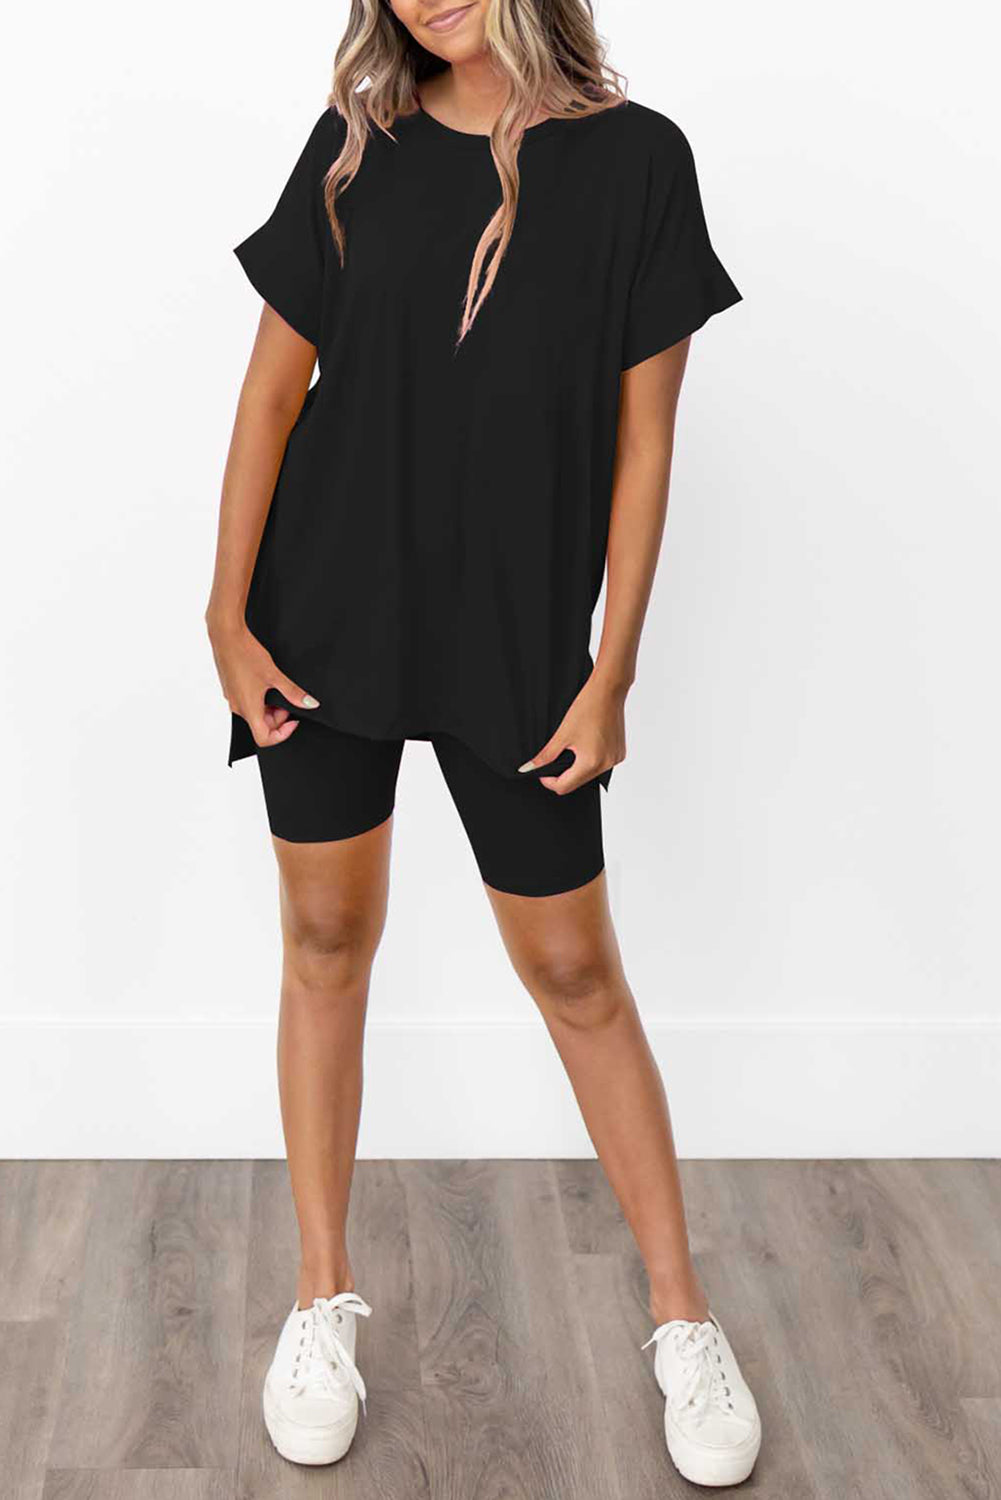 Schwarzes Set mit einfarbigem Tunika-T-Shirt und engen Shorts mit geteiltem Saum